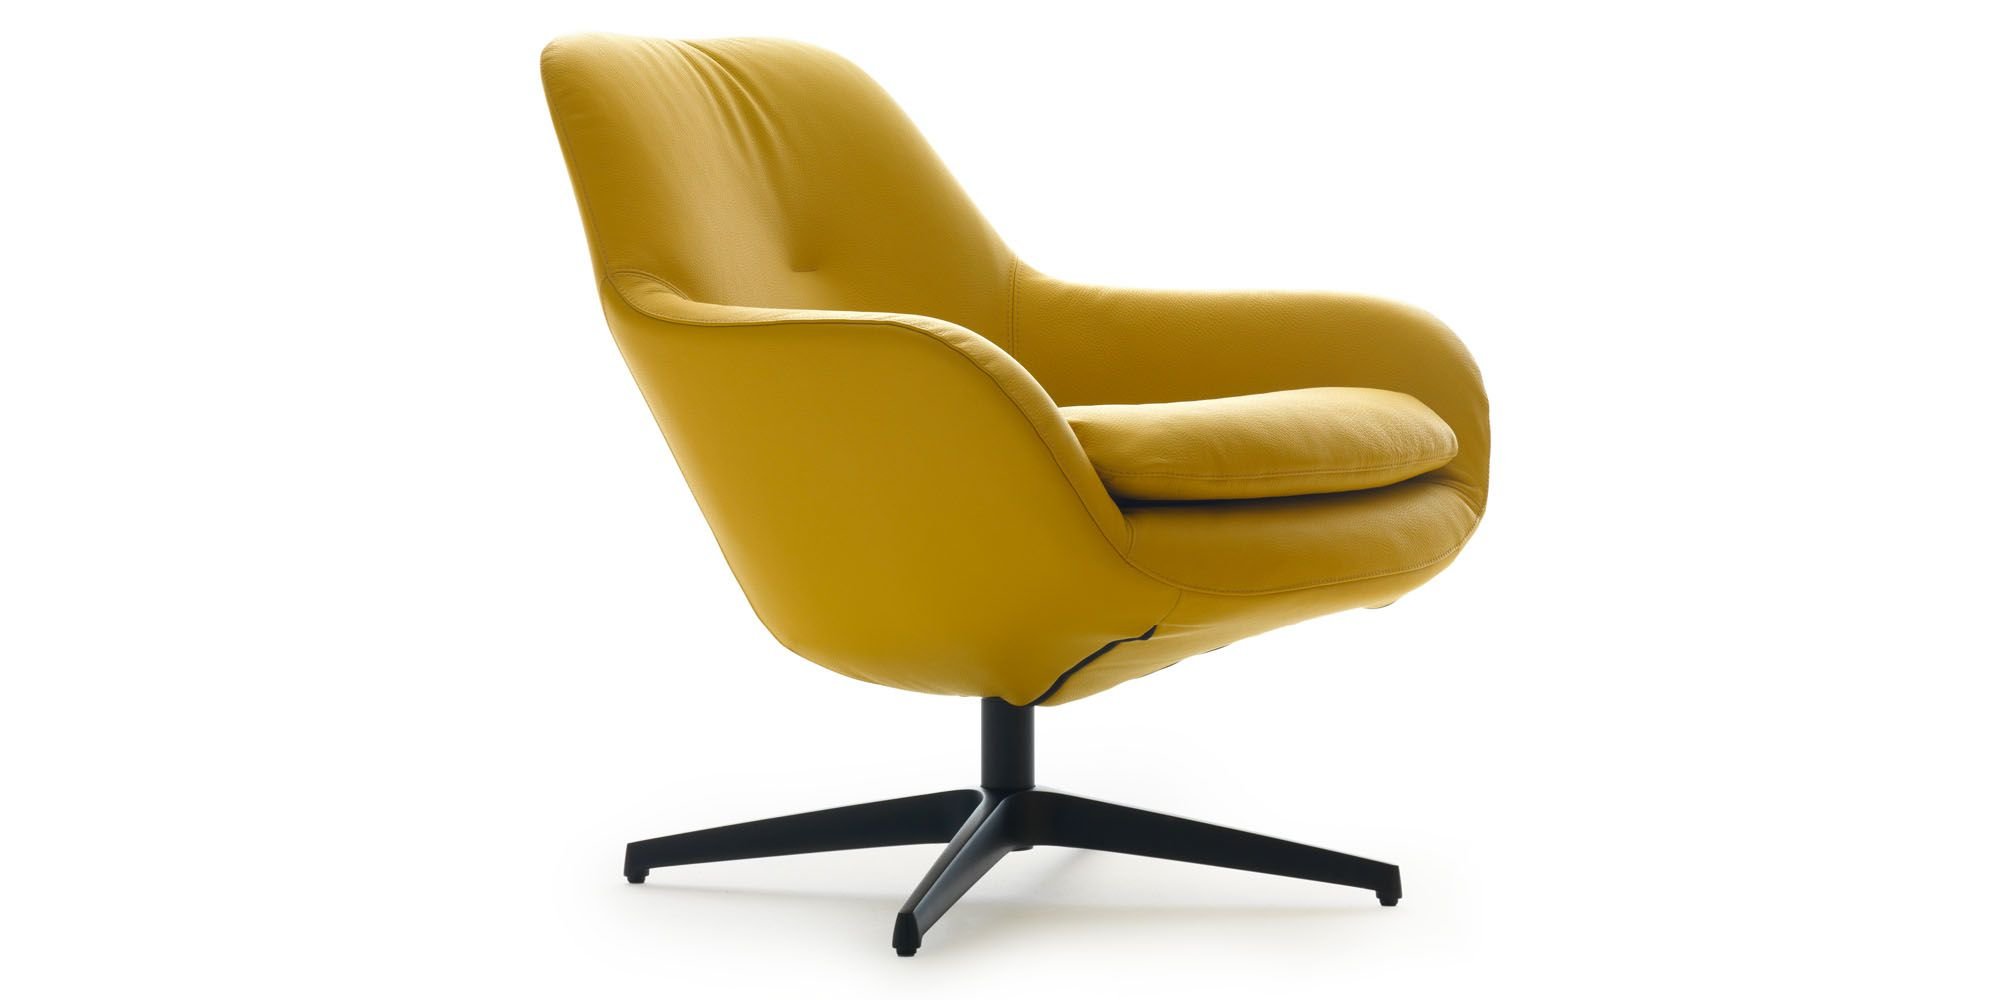 Горчичное кресло. Кресло икеа горчичное. Lxr18 by leolux кресло. Офисное кресло горчичного цвета. Стул кресло горчичного цвета.